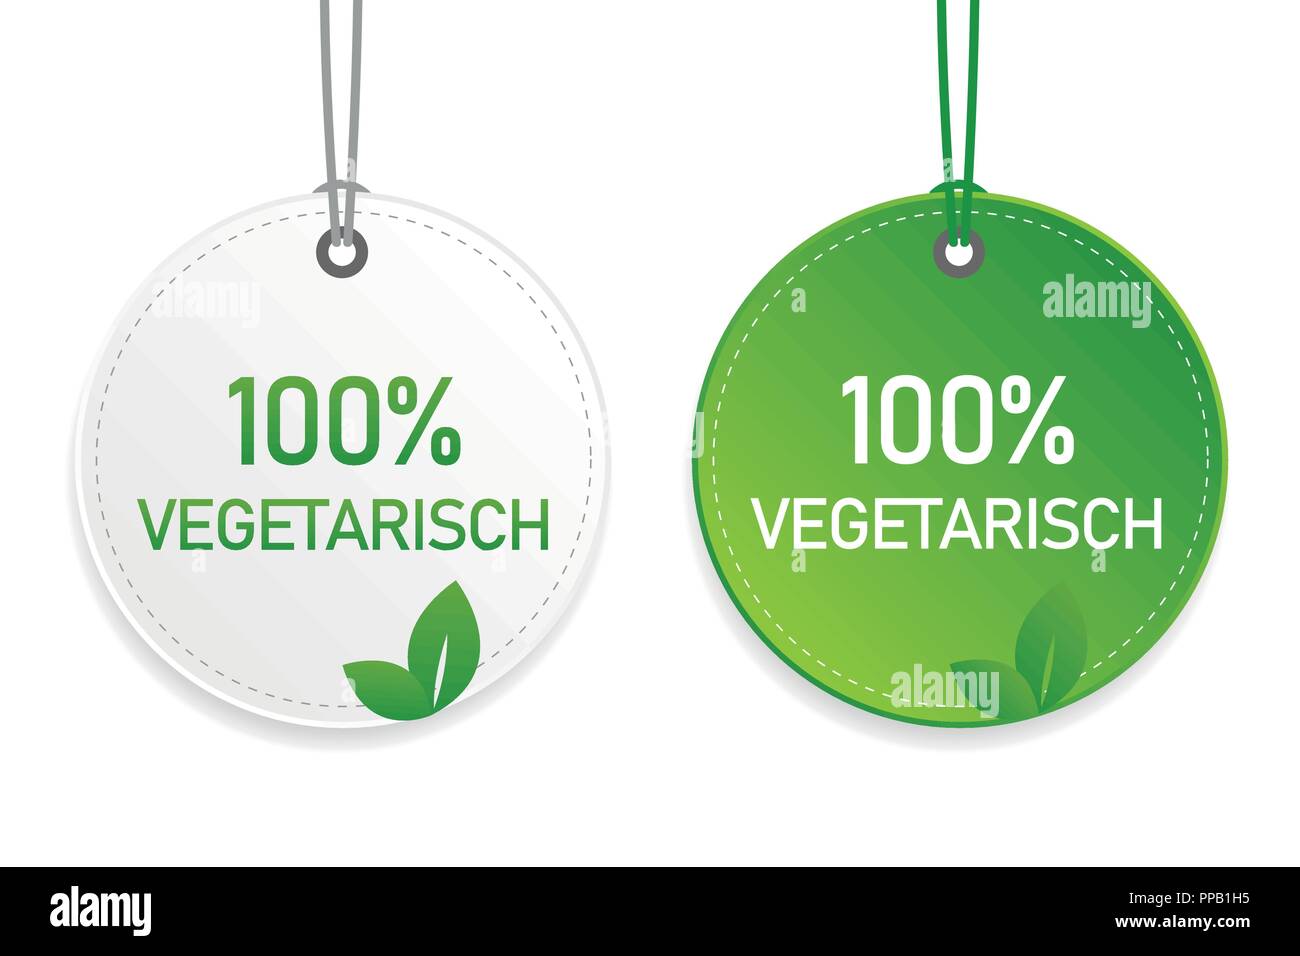 Vegetarische Typografie Bio Lebensmittel kennzeichnen und beschriften grüne und weiße Design-Elemente auf weißem Hintergrund Vektor-illustration EPS 10 isoliert Stock Vektor